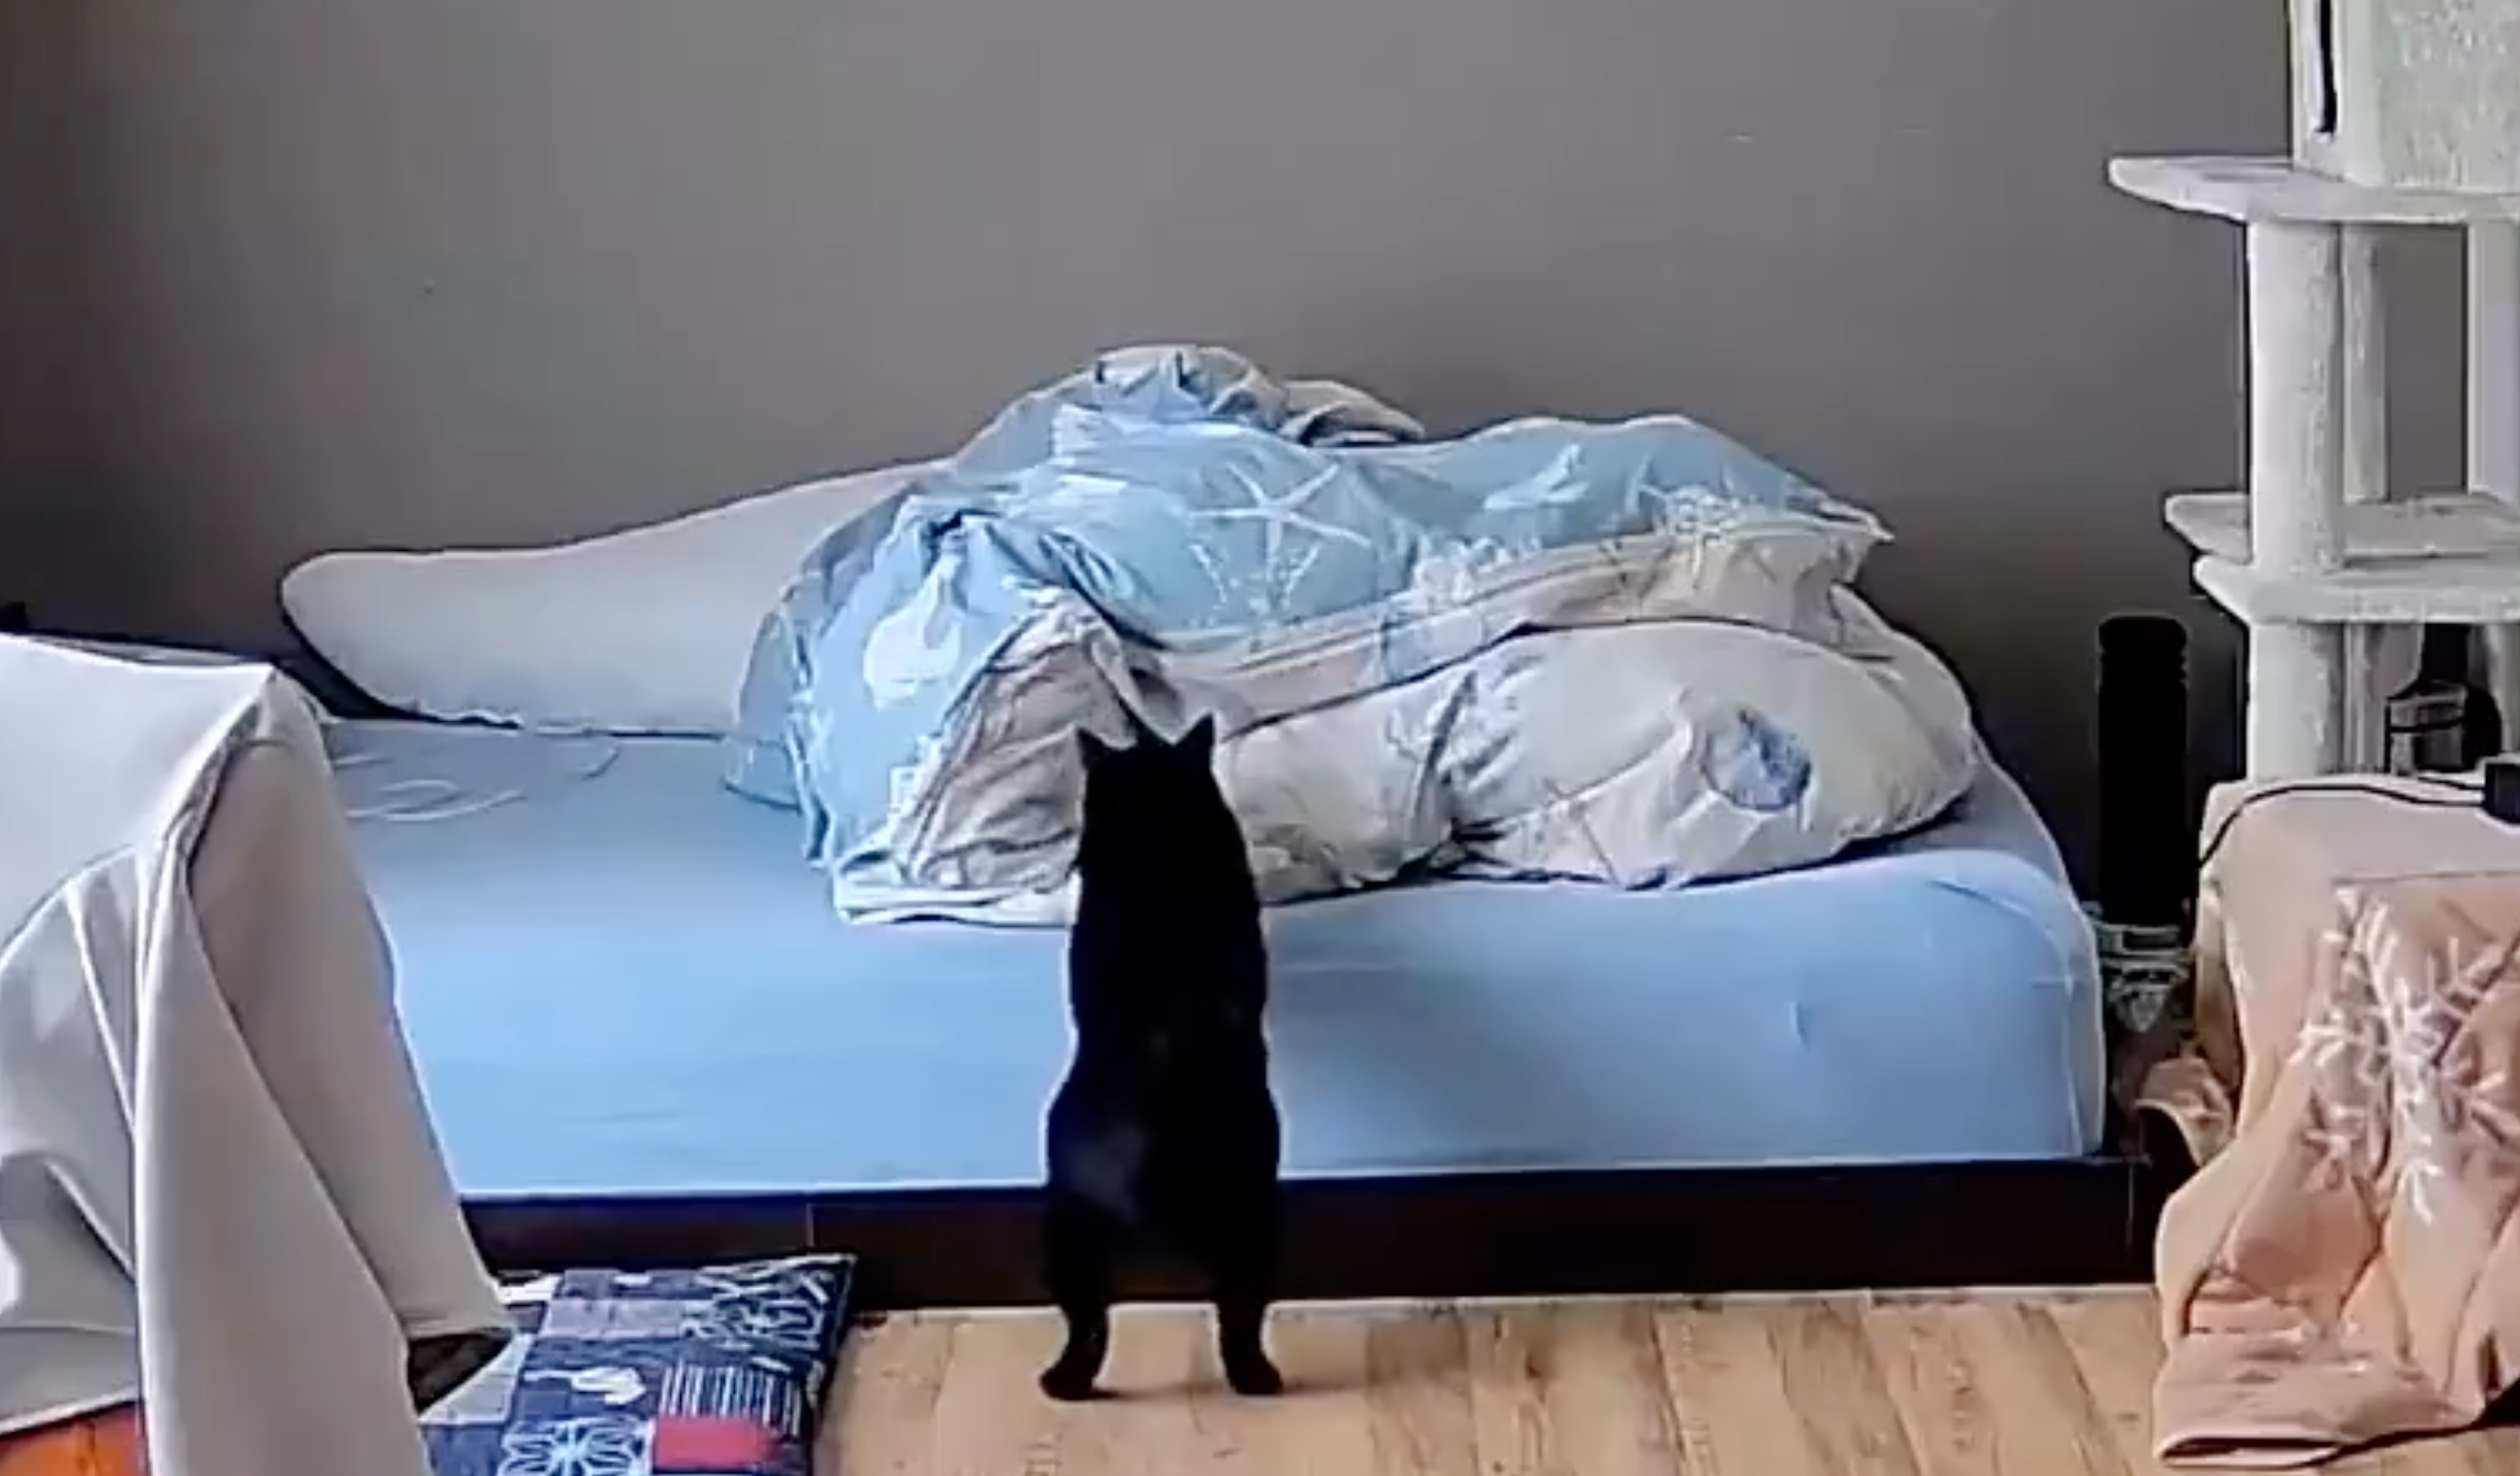 黒猫がベッドを見上げている。ベッドには散らばった青い布団がある。